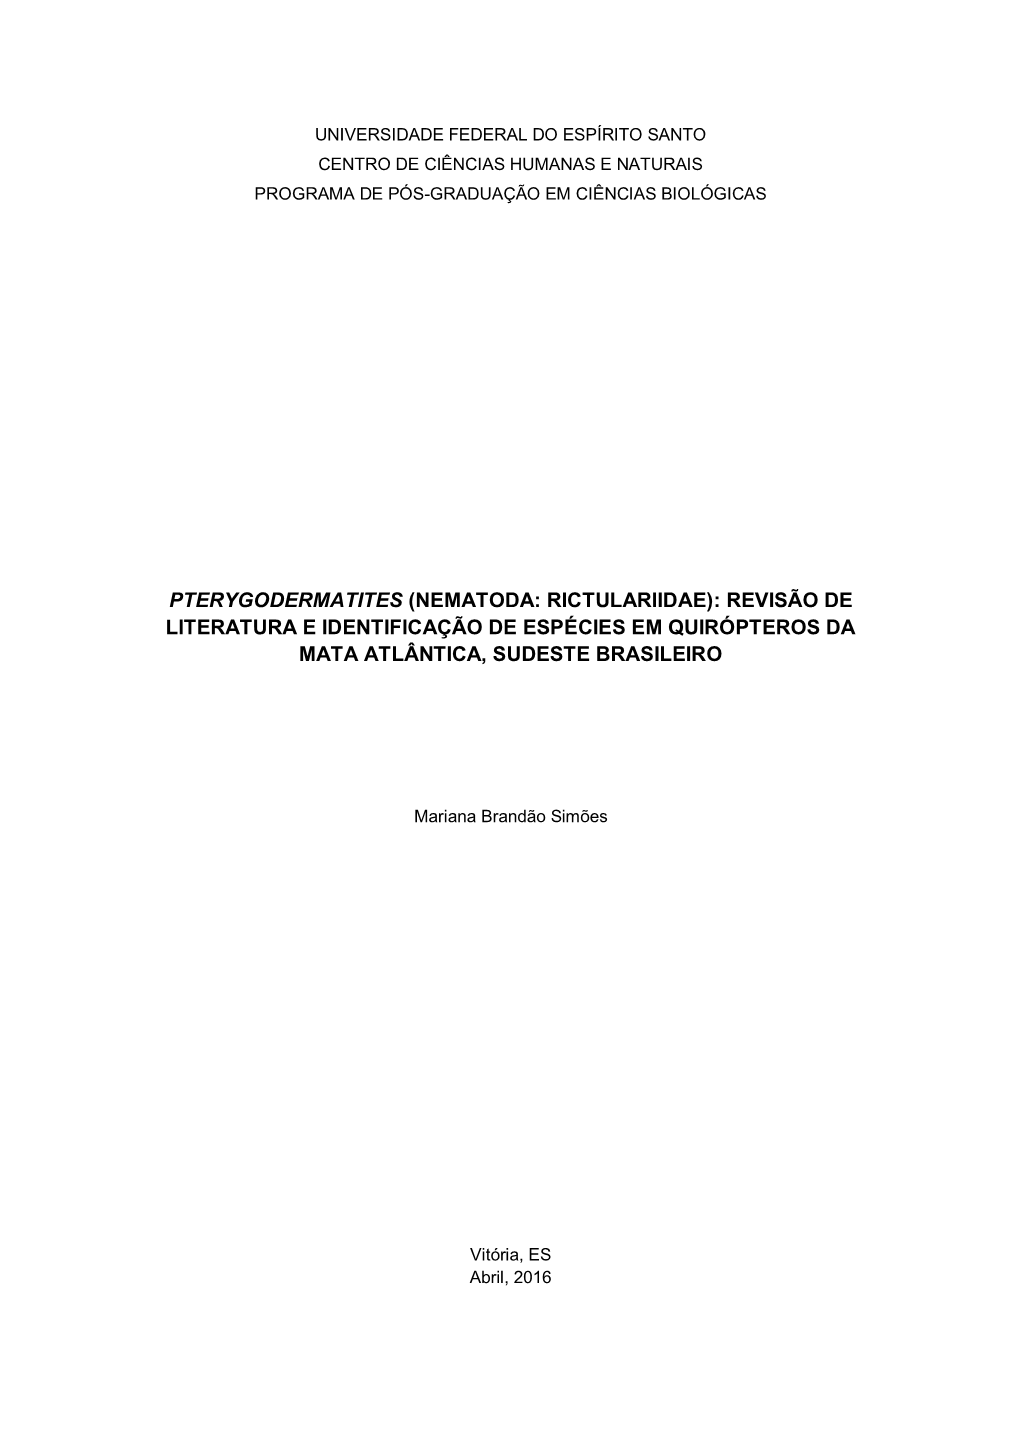 Pterygodermatites (Nematoda: Rictulariidae): Revisão De Literatura E Identificação De Espécies Em Quirópteros Da Mata Atlântica, Sudeste Brasileiro